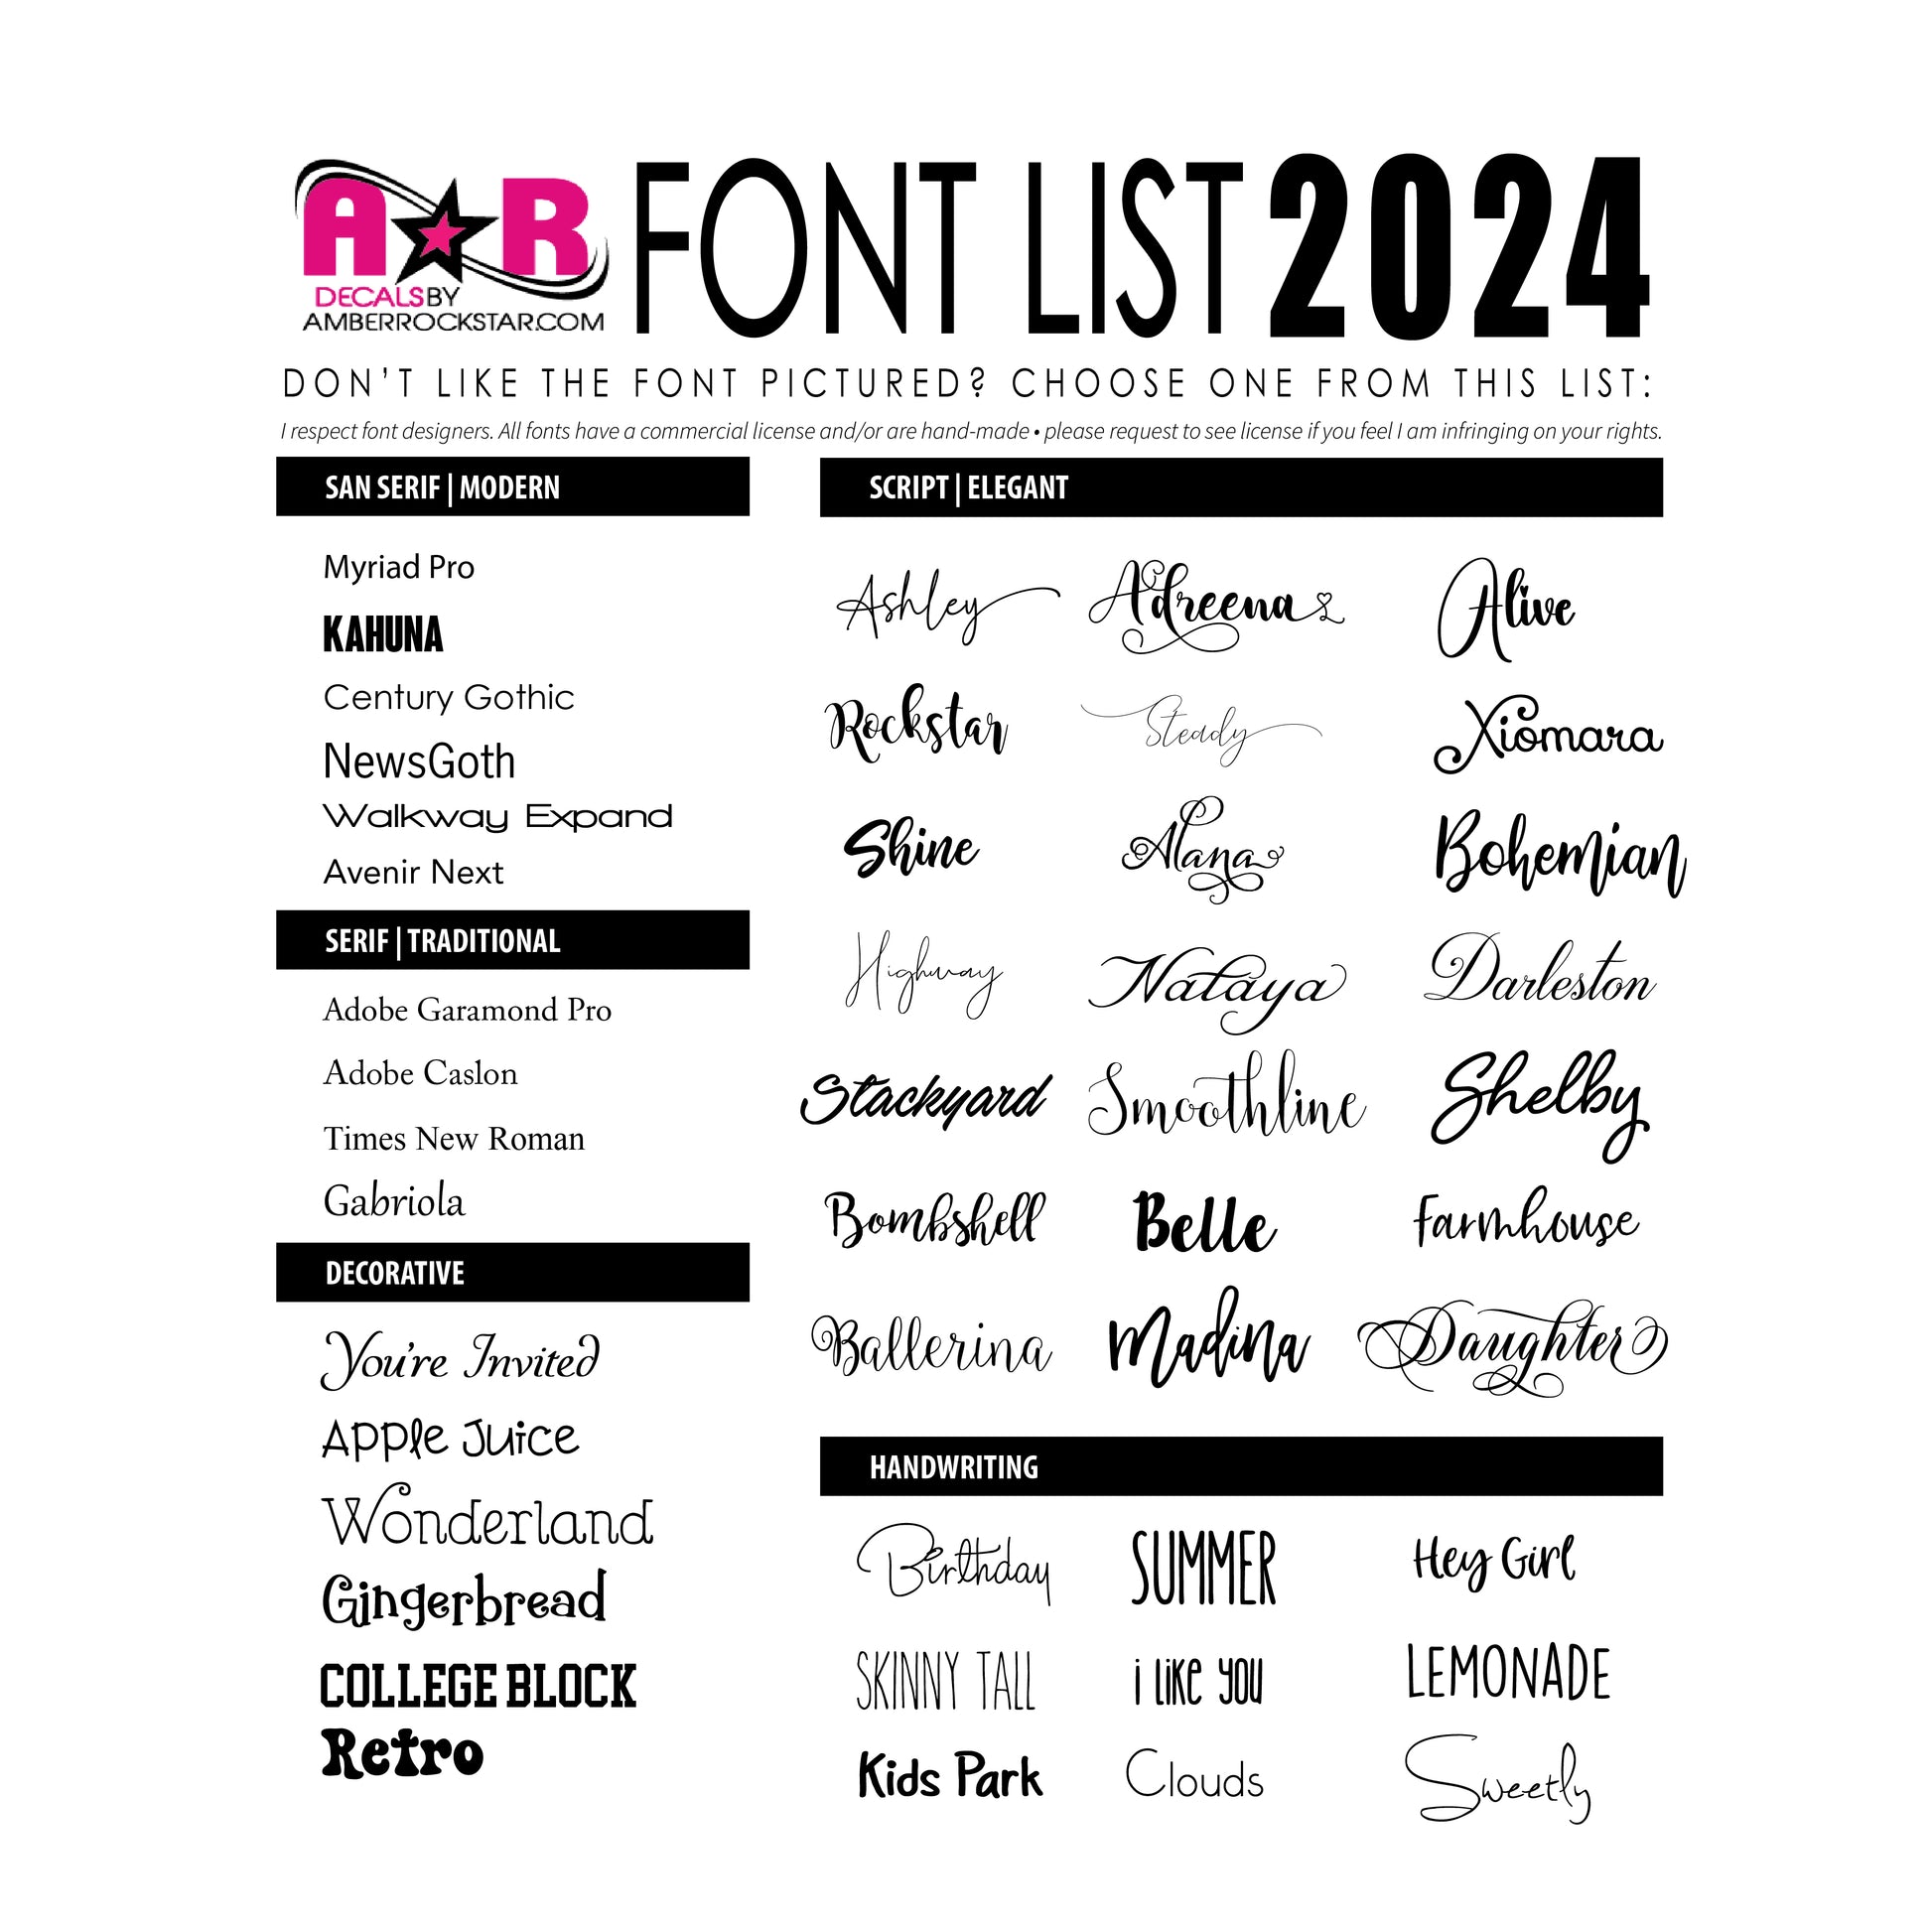 the font list for the font list for the font list